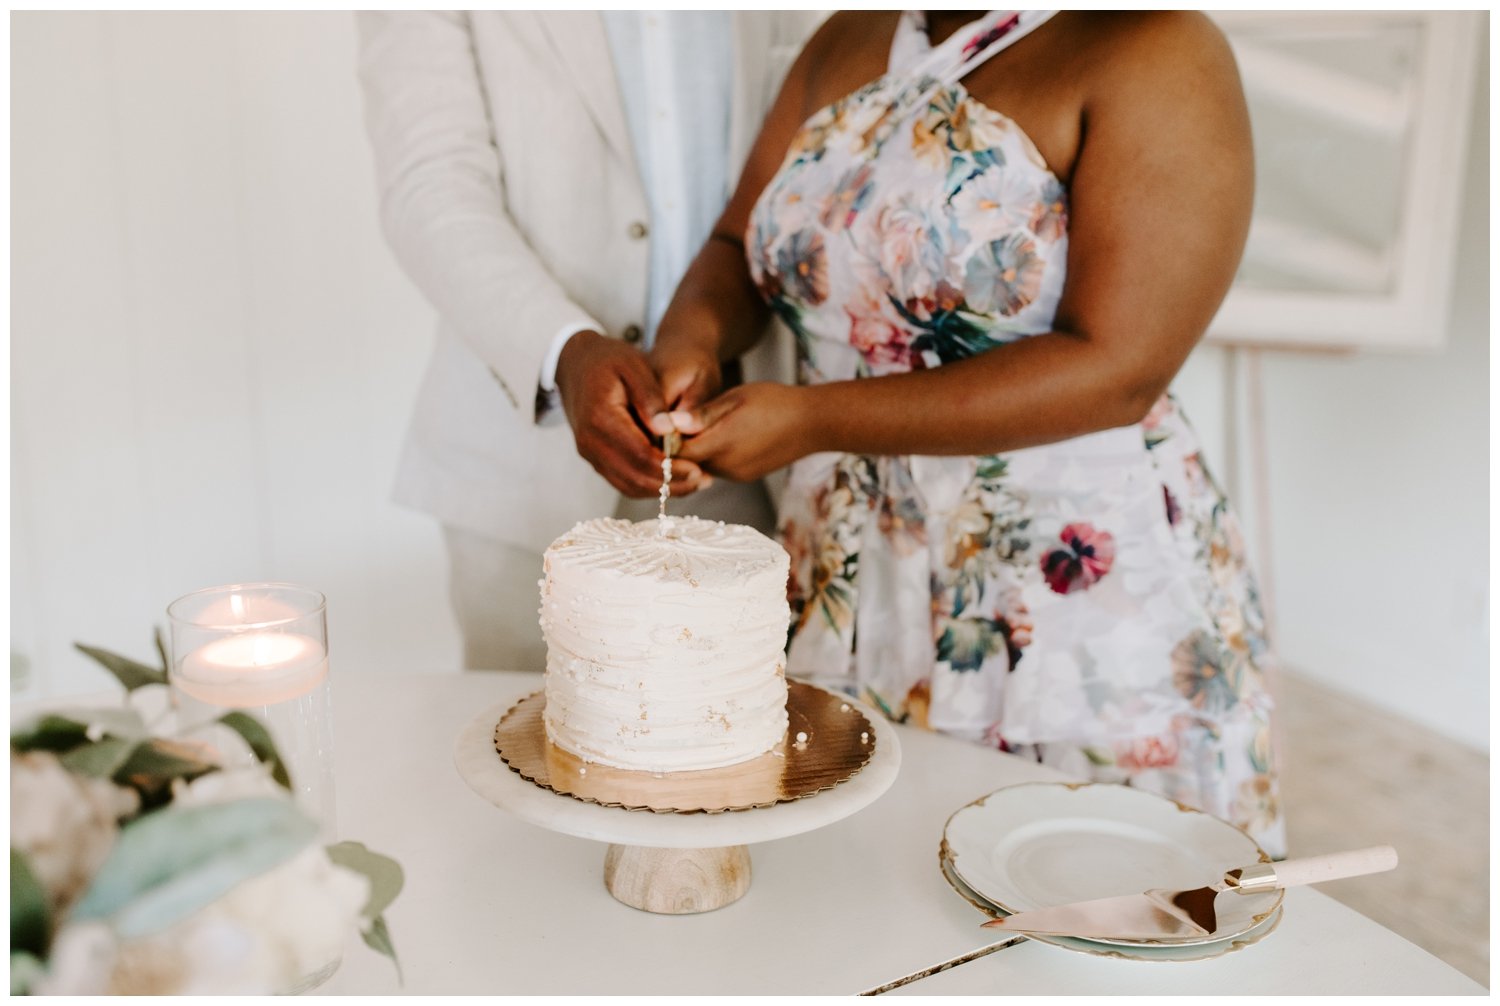 A cake cutting at a luxury wedding venue in Atlanta